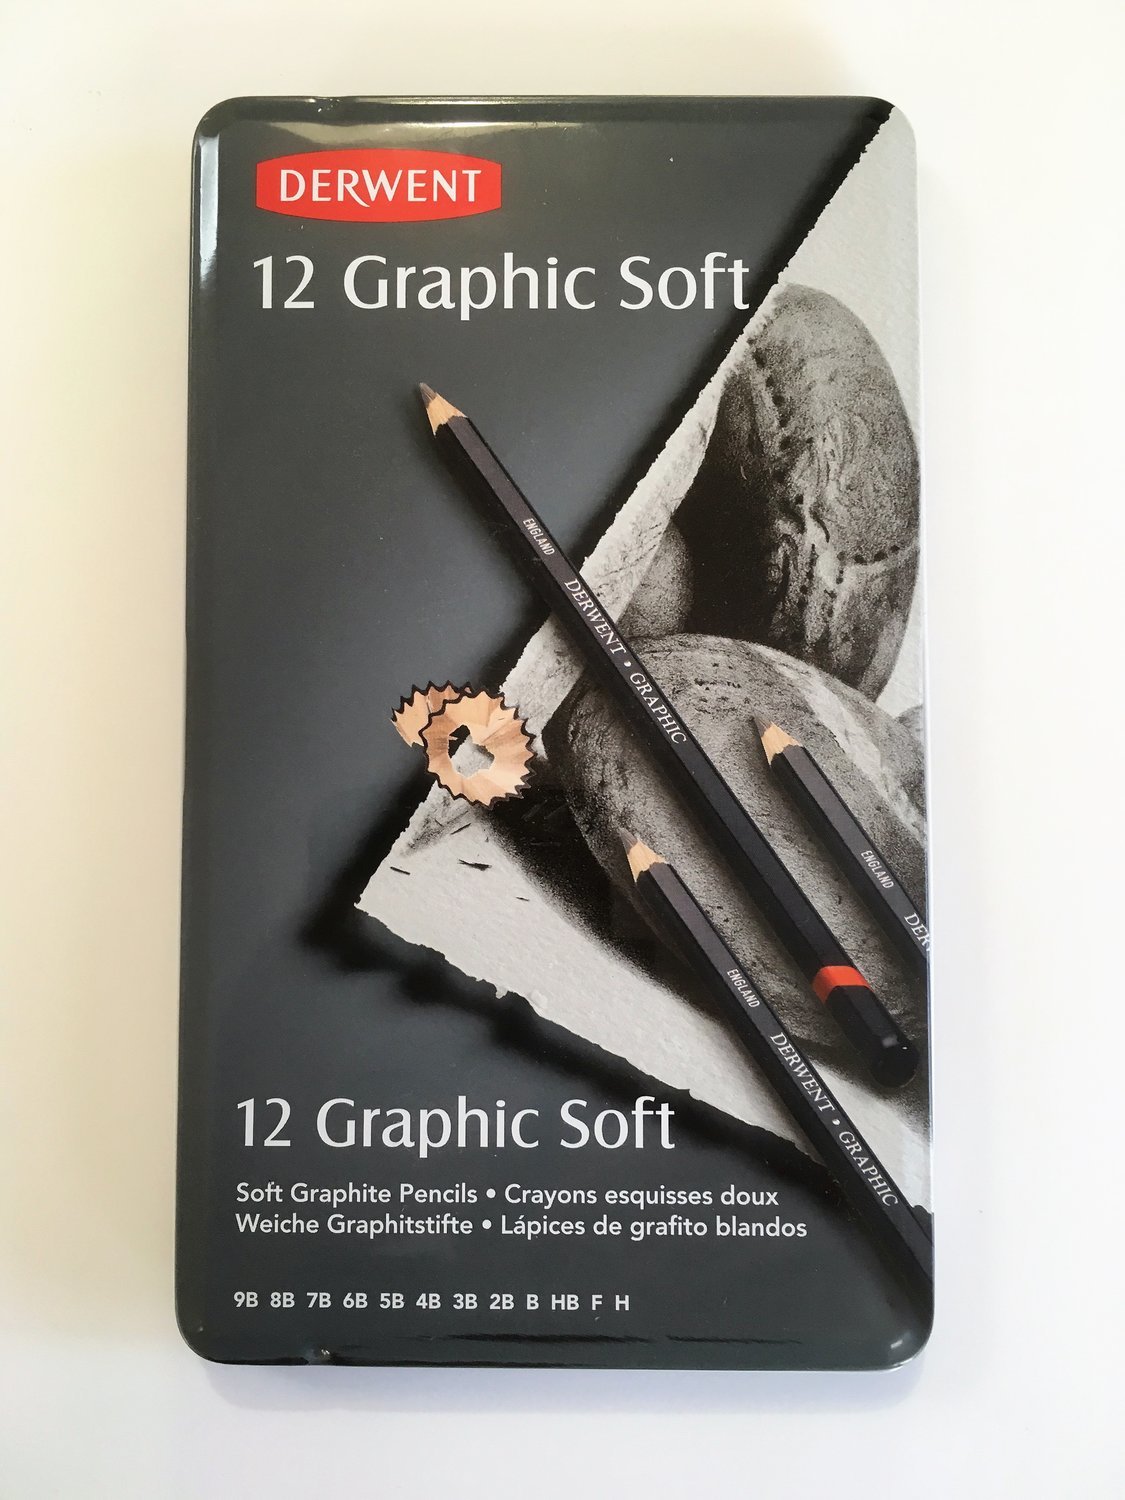 Derwent Graphic Soft 12 Pencils